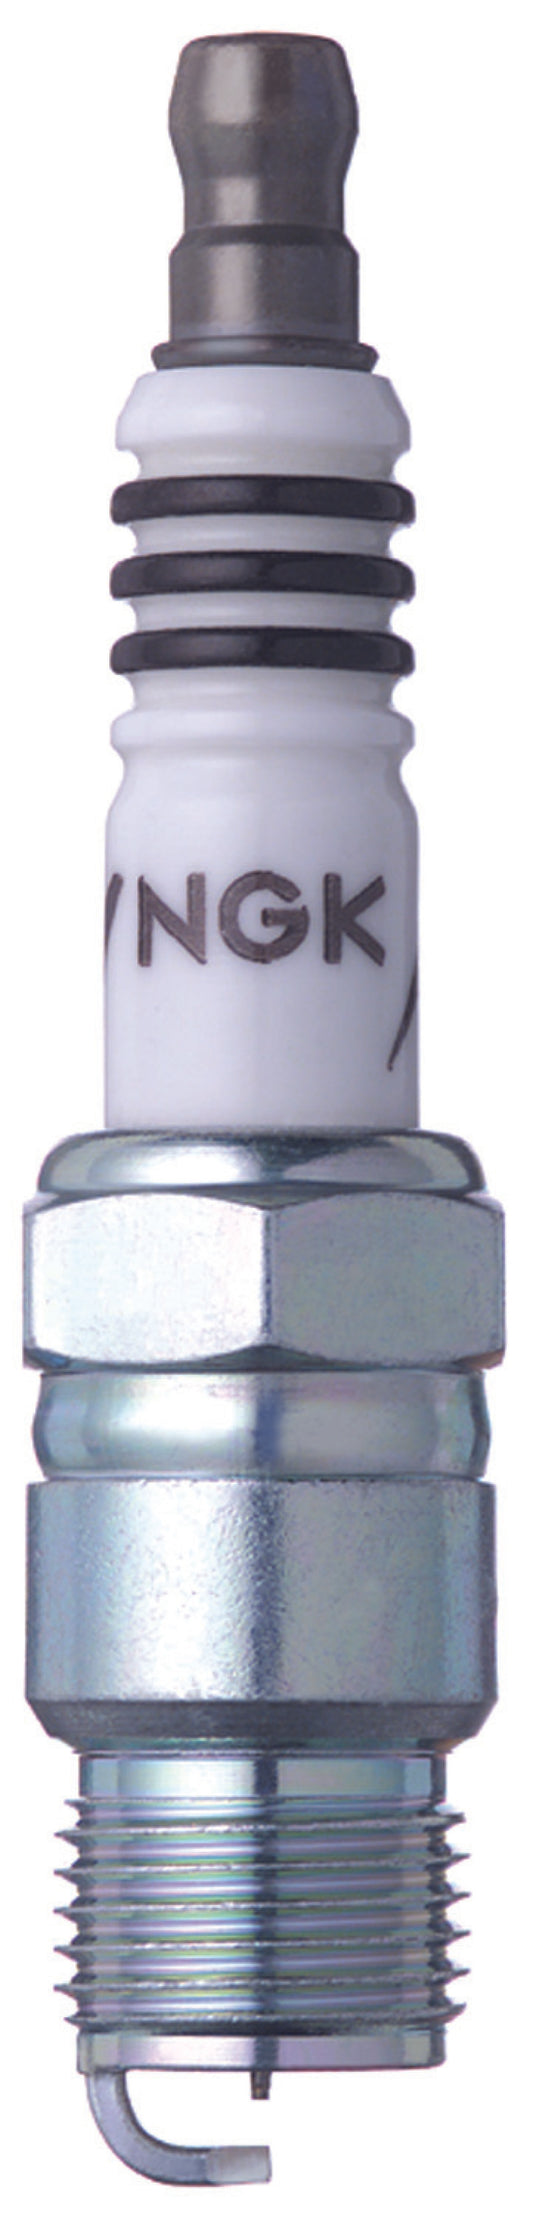 NGK Iridium IX Spark Plug Box of 4 (YR55IX)